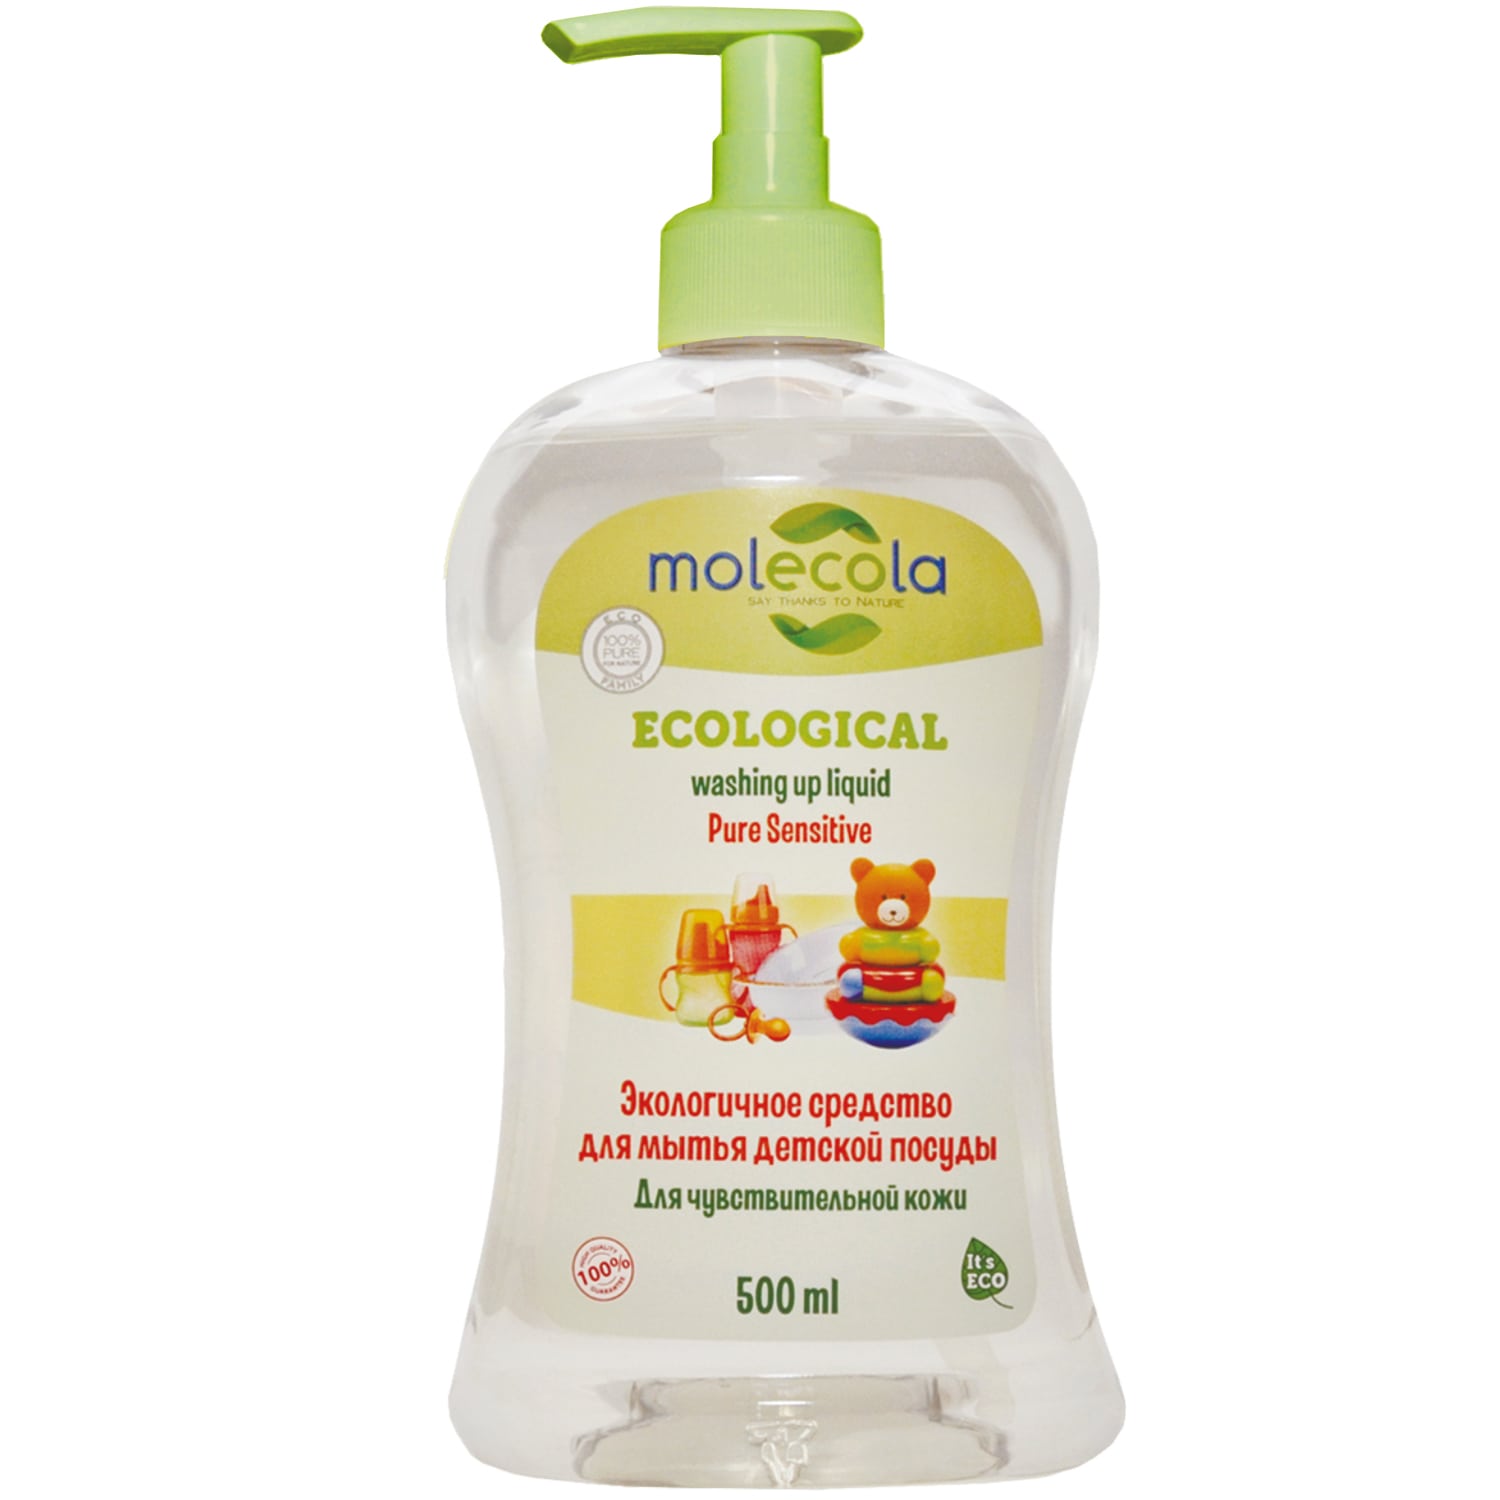 Molecola Средство для мытья детской посуды для чувствительной кожи, экологическое, 500 мл (Molecola, Детская серия) средства для мытья посуды molecola средство для мытья детской посуды для чувствительной кожи